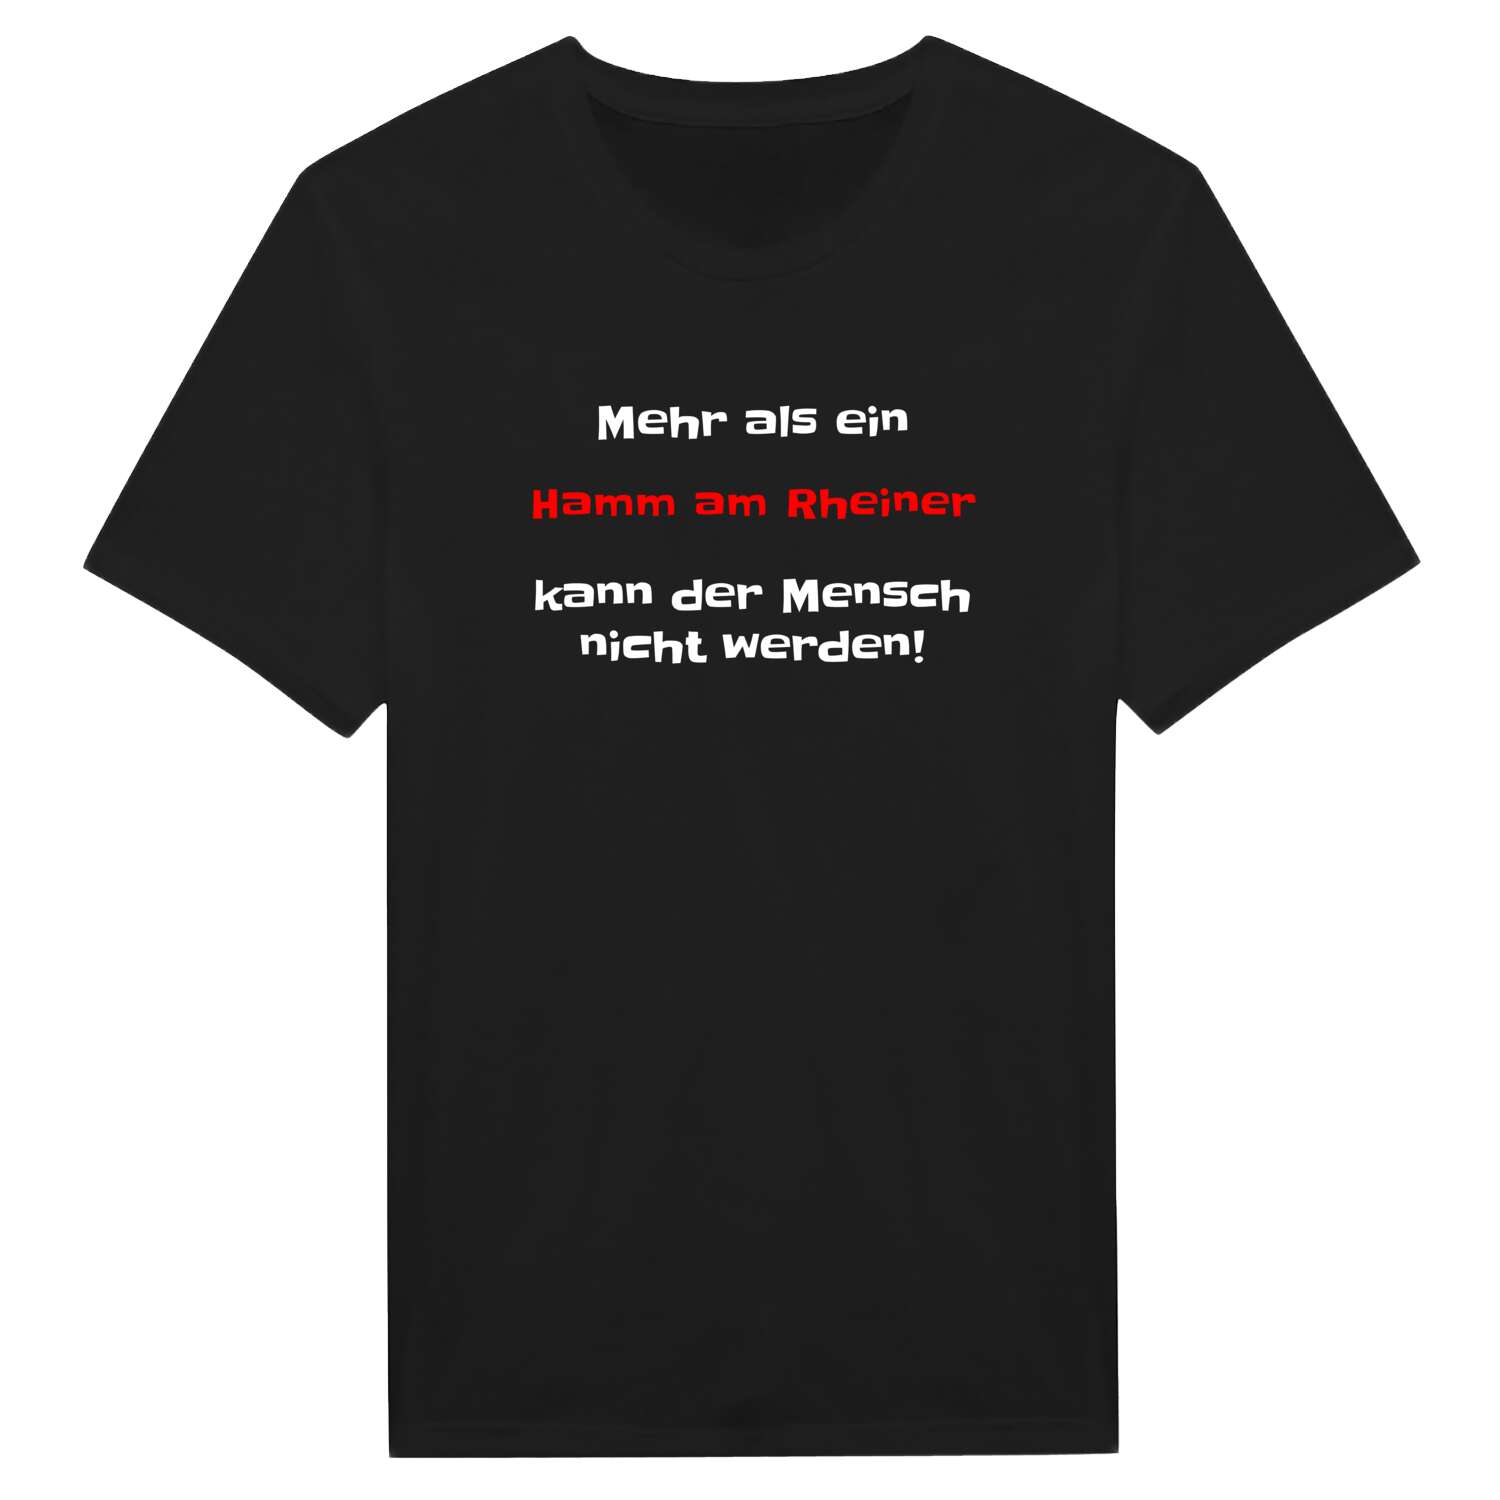 Hamm am Rhein T-Shirt »Mehr als ein«